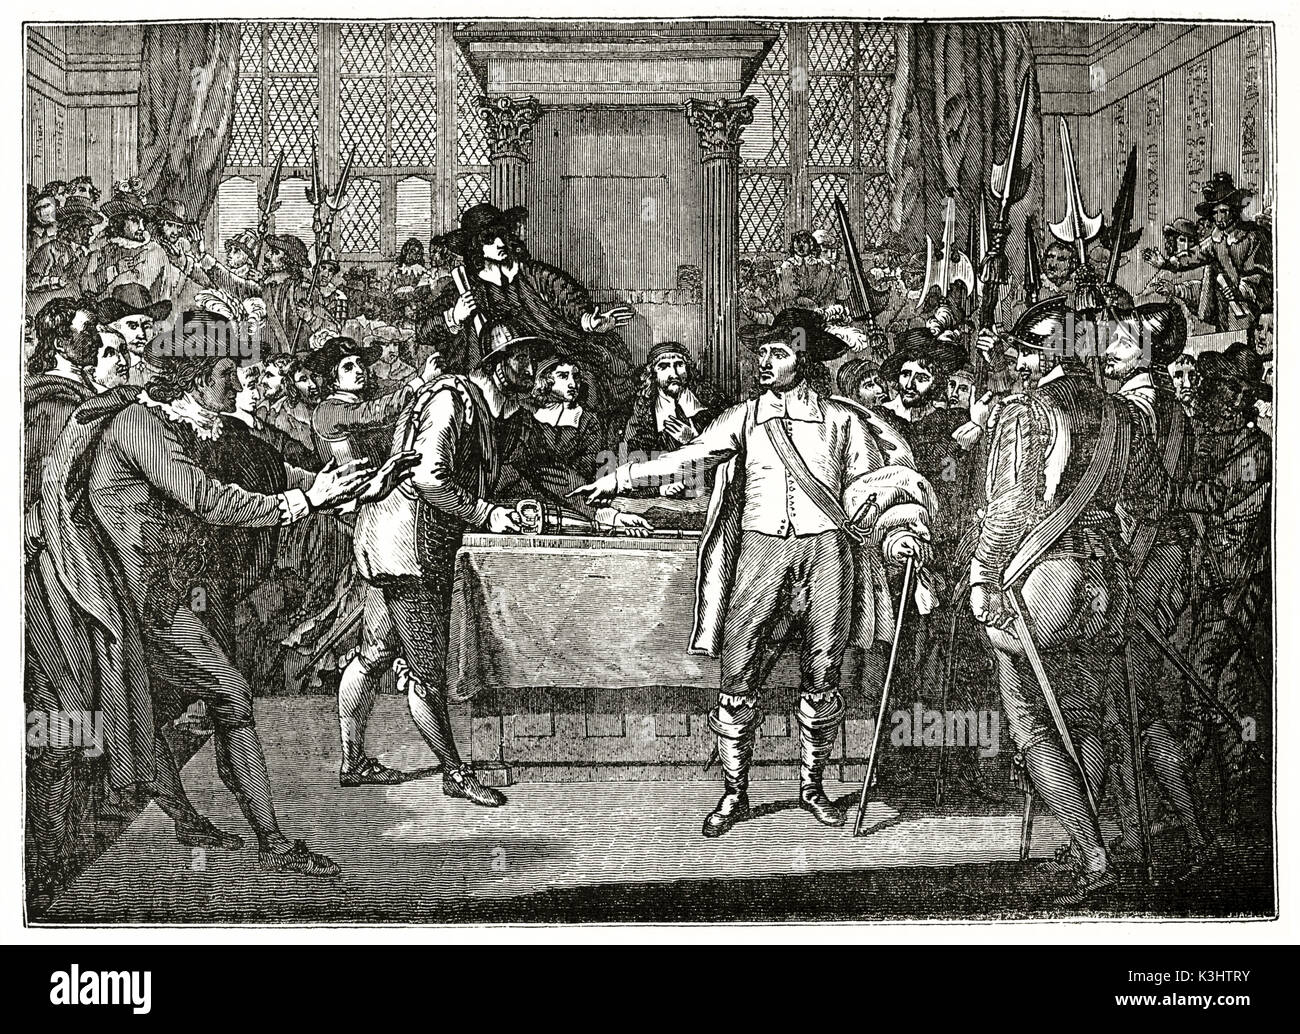 Alte graviert Reproduktion eines Gemäldes von Cromwell und ein Band der Soldaten zu unterbrechen. Nach Westen, auf Magasin Pittoresque, Paris, 1838 veröffentlicht. Stockfoto